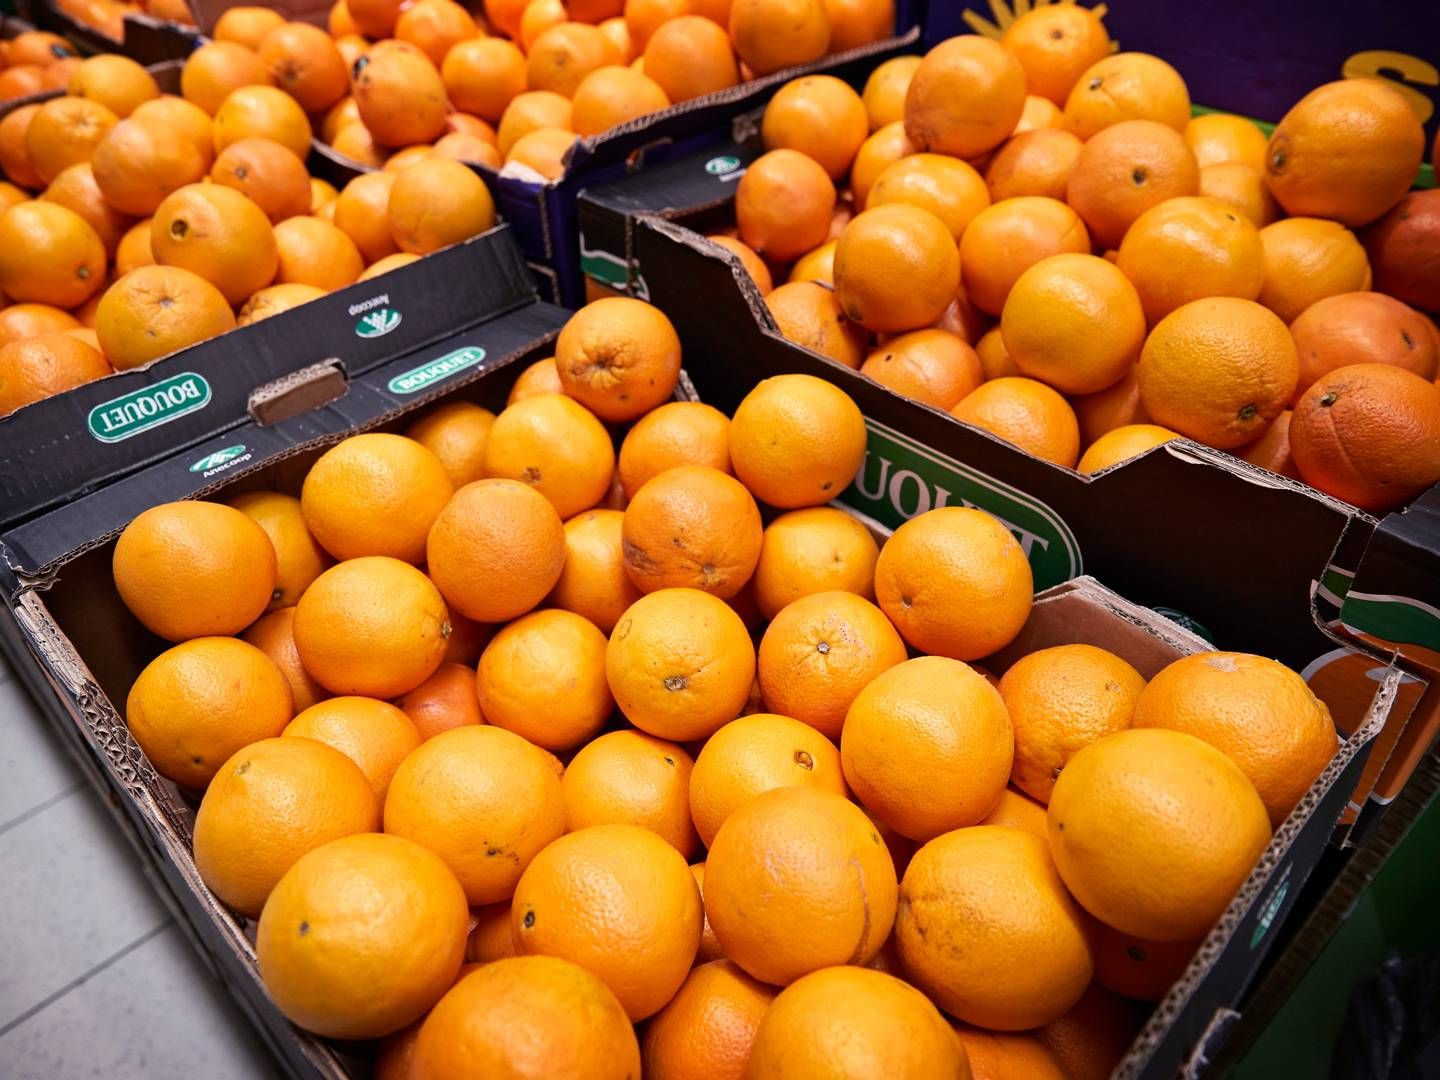 Ifølge Mark Hemmingsen, adm. direktør i Rynkeby Foods, er en af de eneste løsninger at sælge mindre appelsinjuice og i stedet flytte salget til andre produkter. | Foto: Jens Dresling